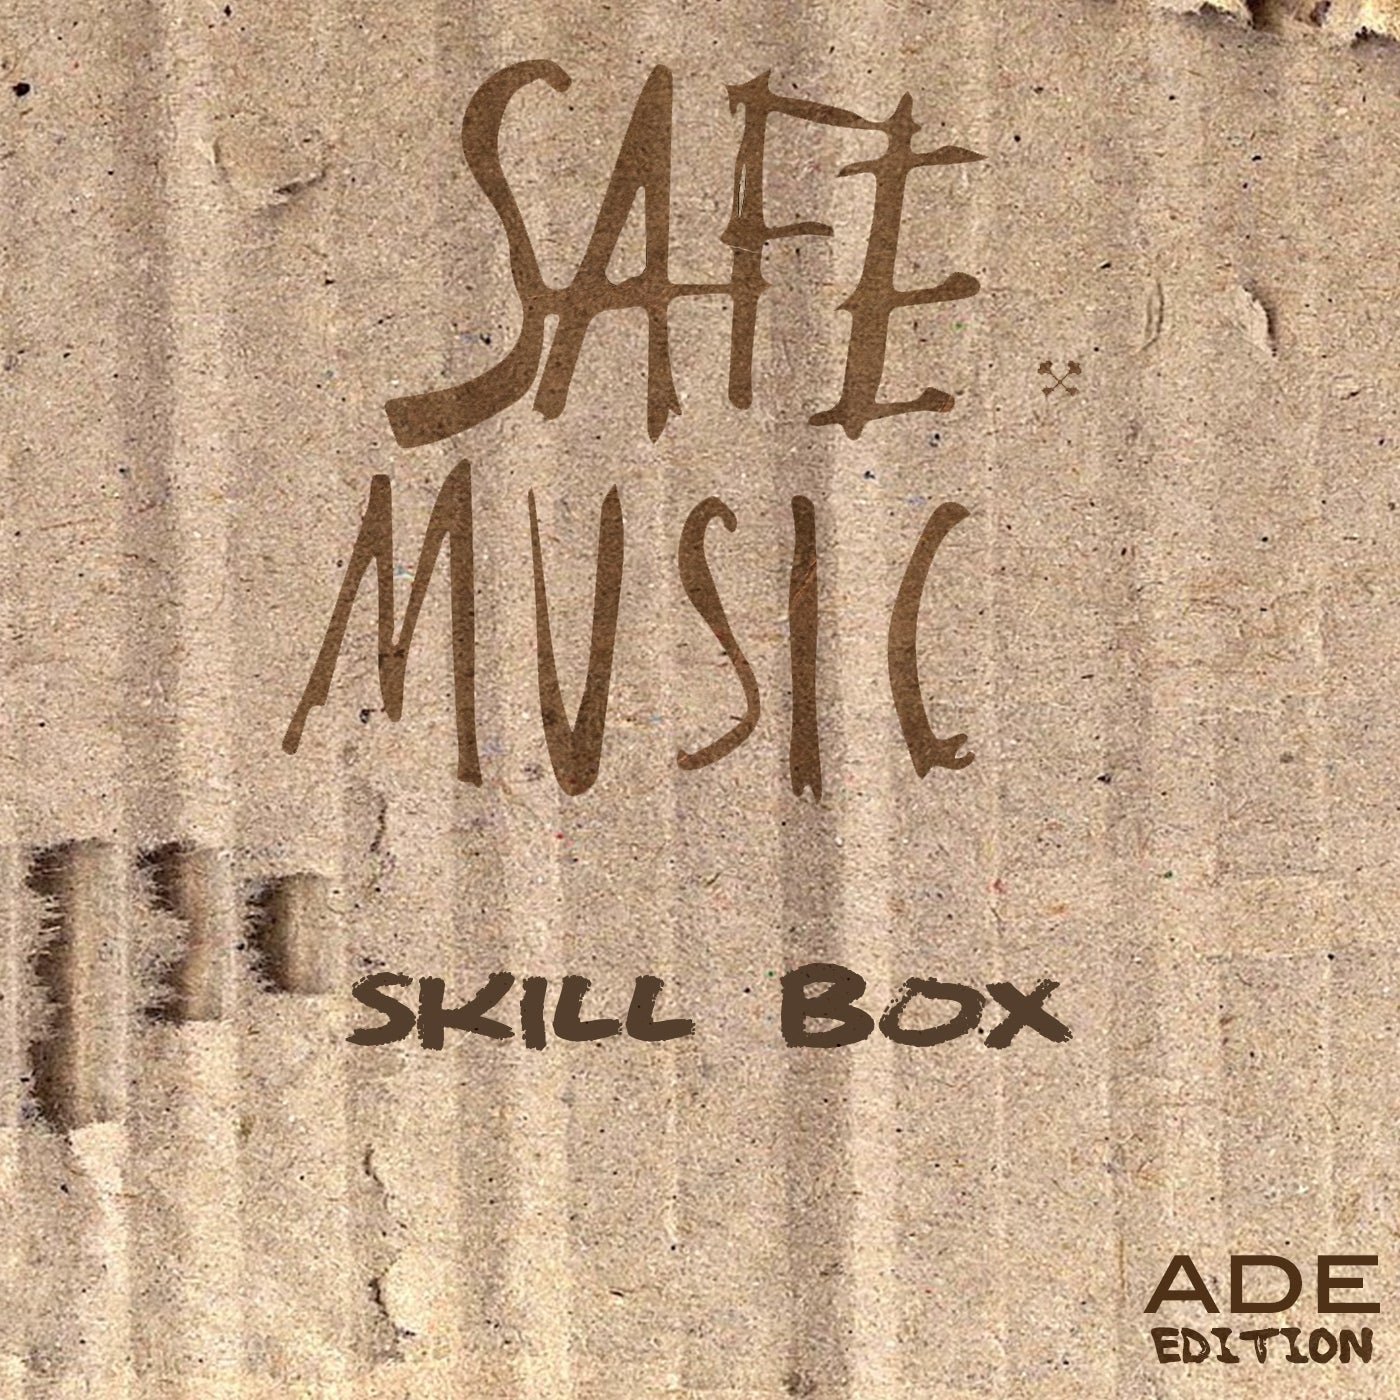 Skill Box, Vol. 13 (ADE Edition)